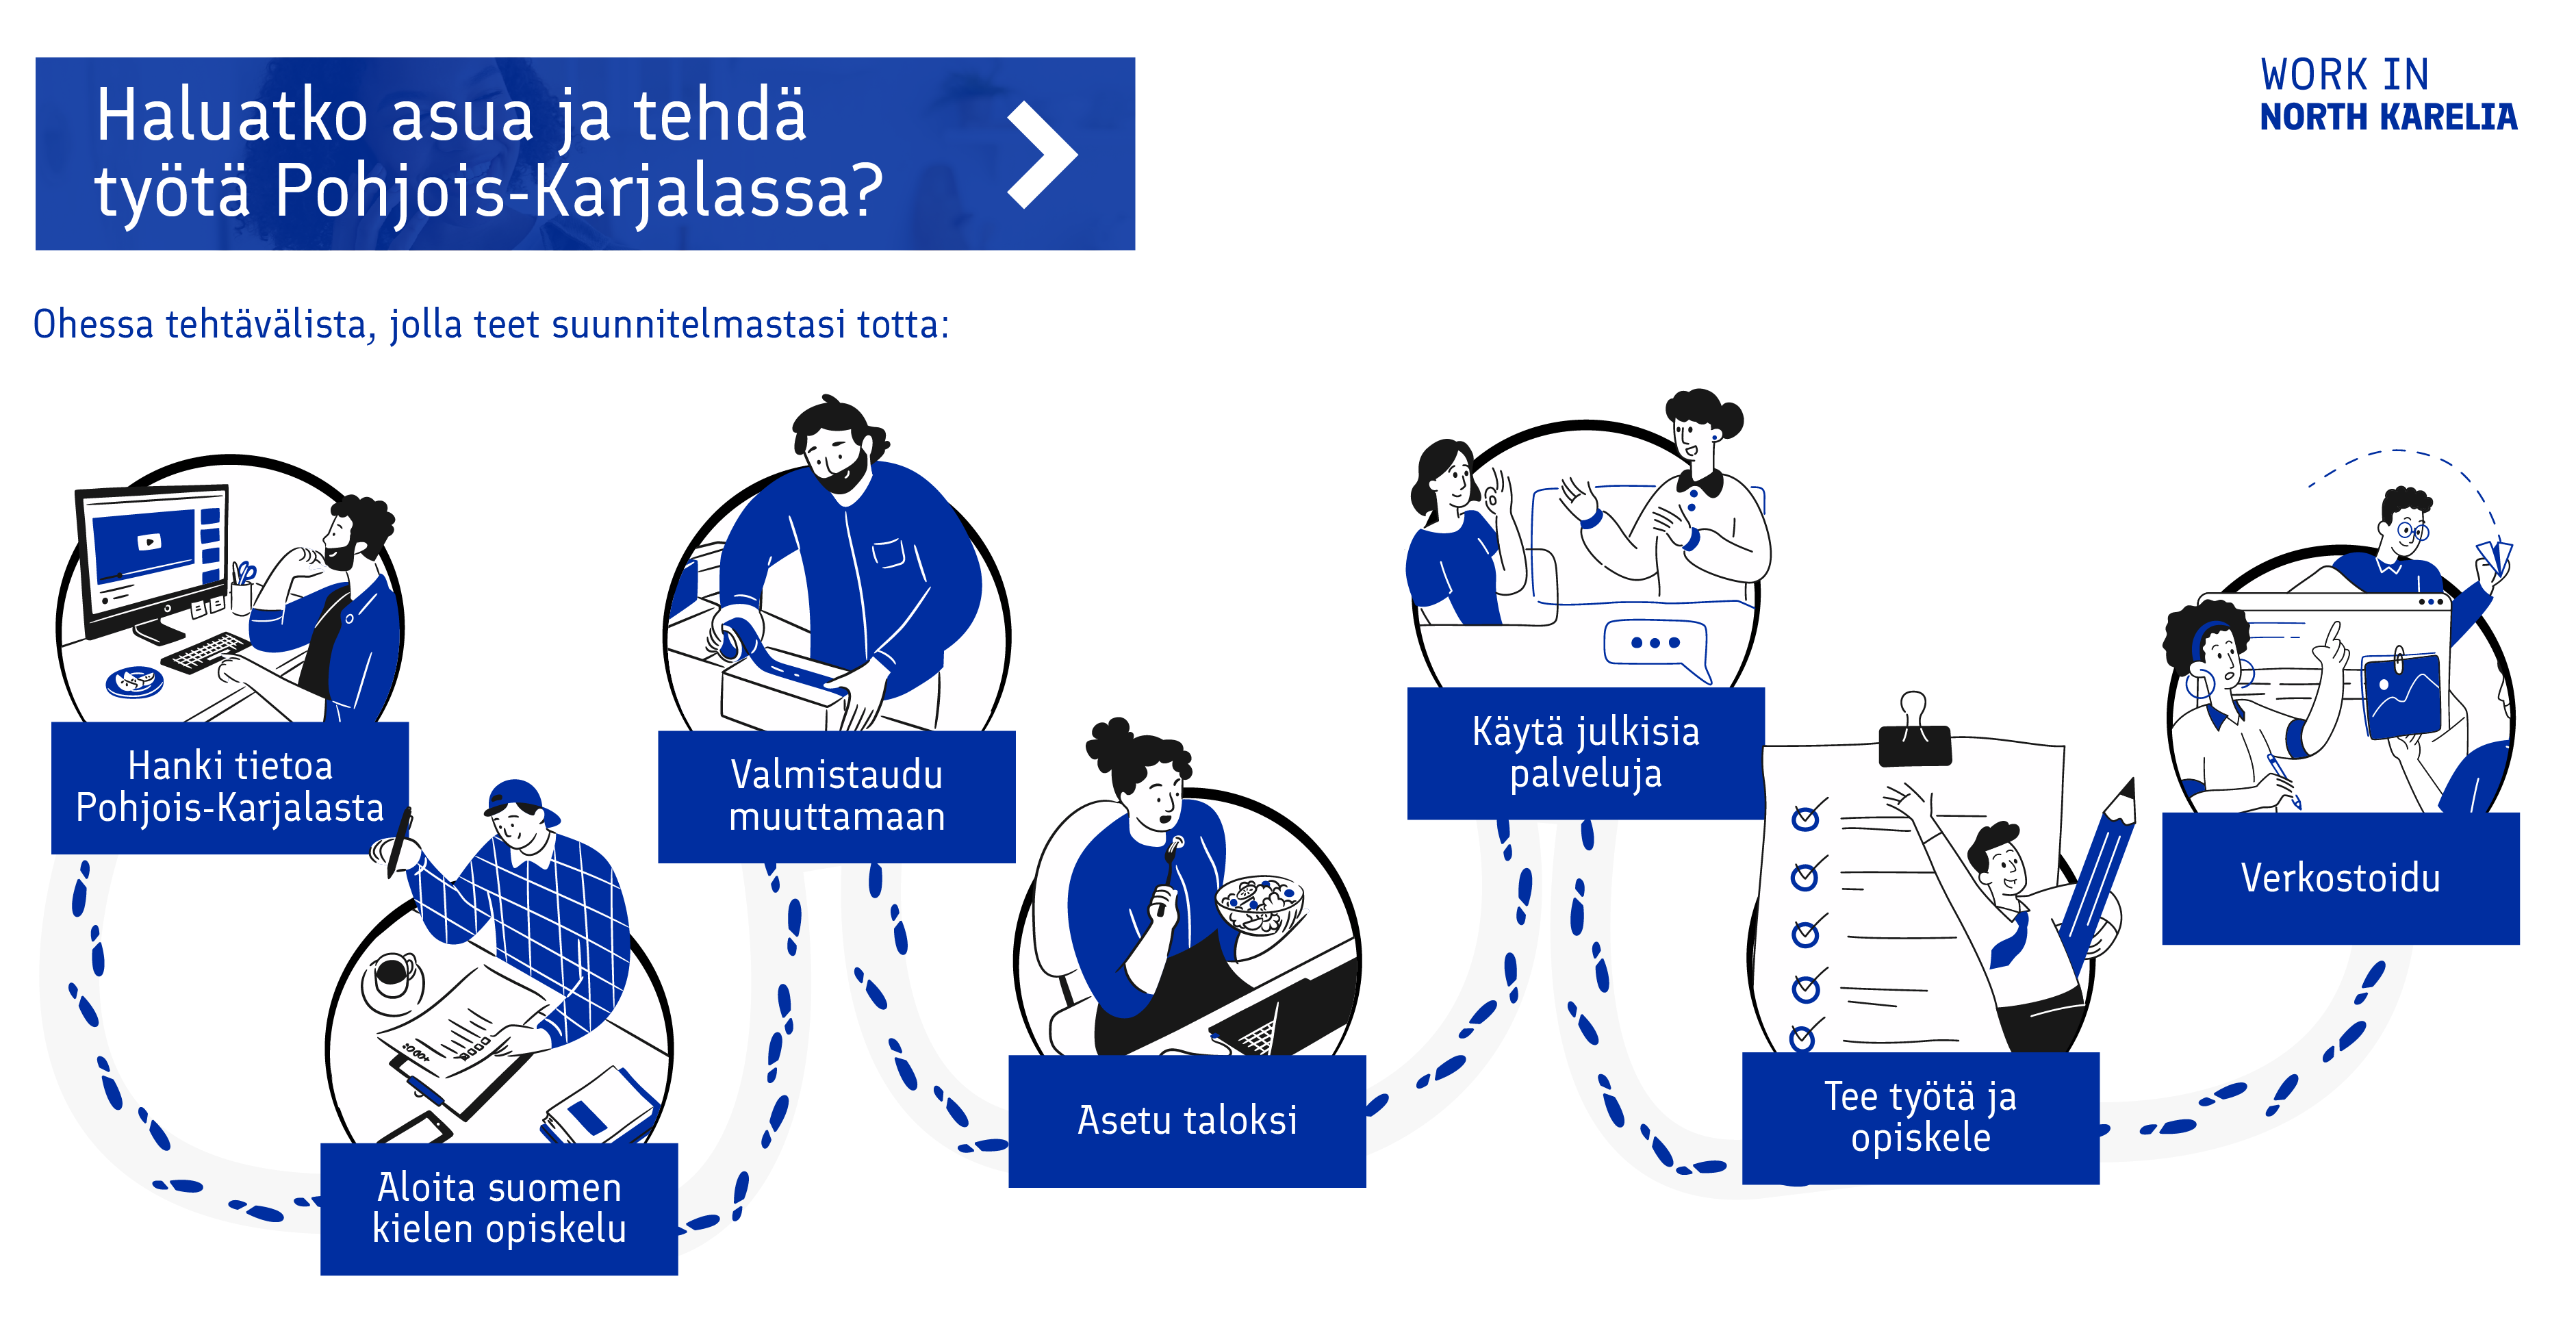 Kuvaus toimenpiteistä, jotka auttavat kansainvälistä työntekijää tulemaan töihin Pohjois-Karjalaan. 